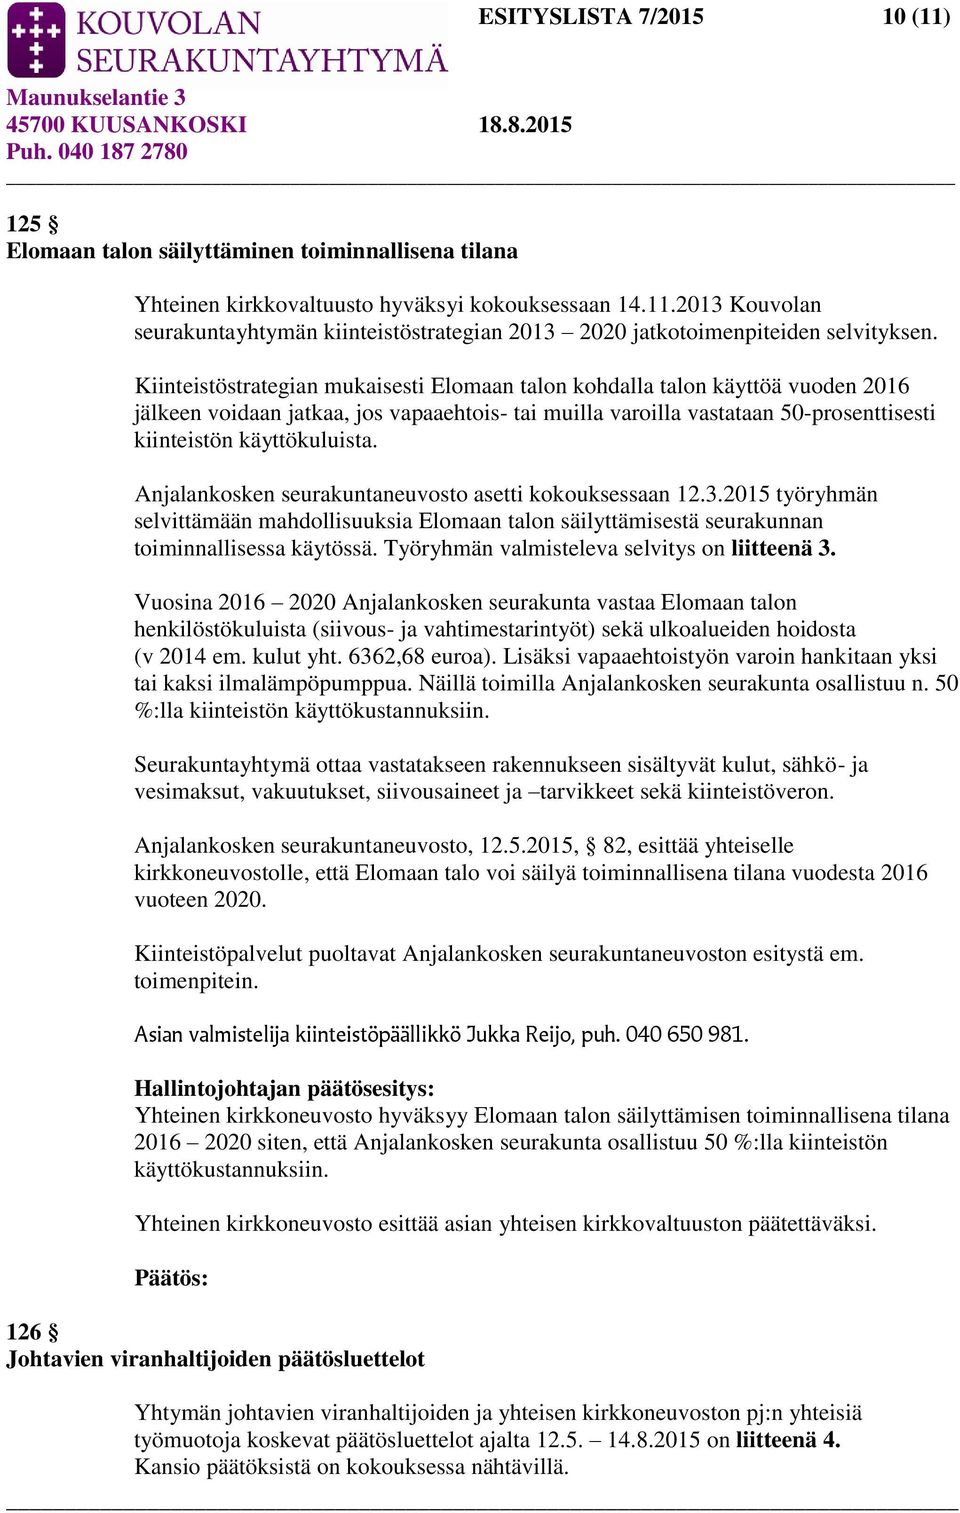 Anjalankosken seurakuntaneuvosto asetti kokouksessaan 12.3.2015 työryhmän selvittämään mahdollisuuksia Elomaan talon säilyttämisestä seurakunnan toiminnallisessa käytössä.